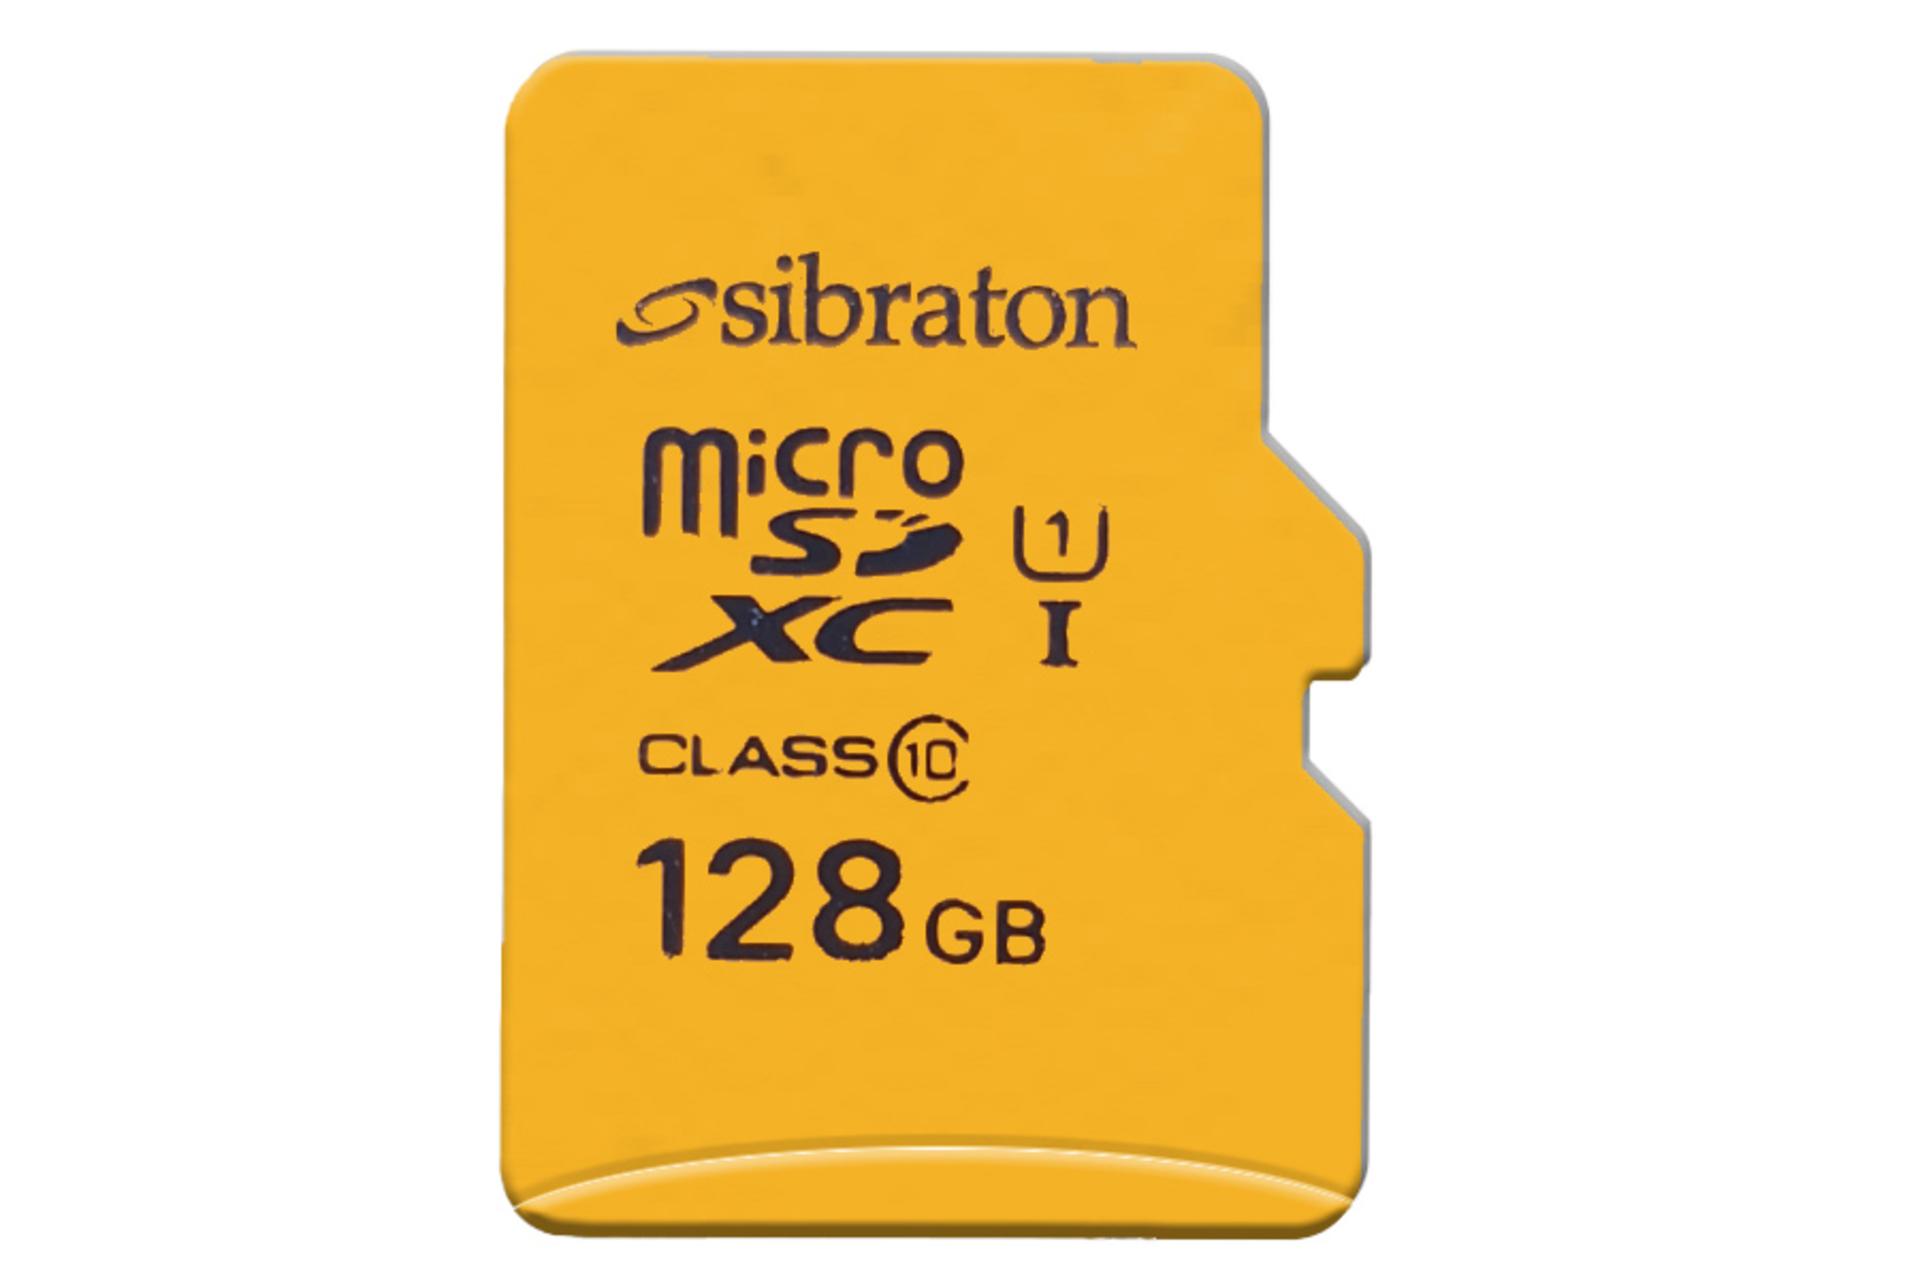 کارت حافظه سیبراتون microSDHC با ظرفیت 128 گیگابایت